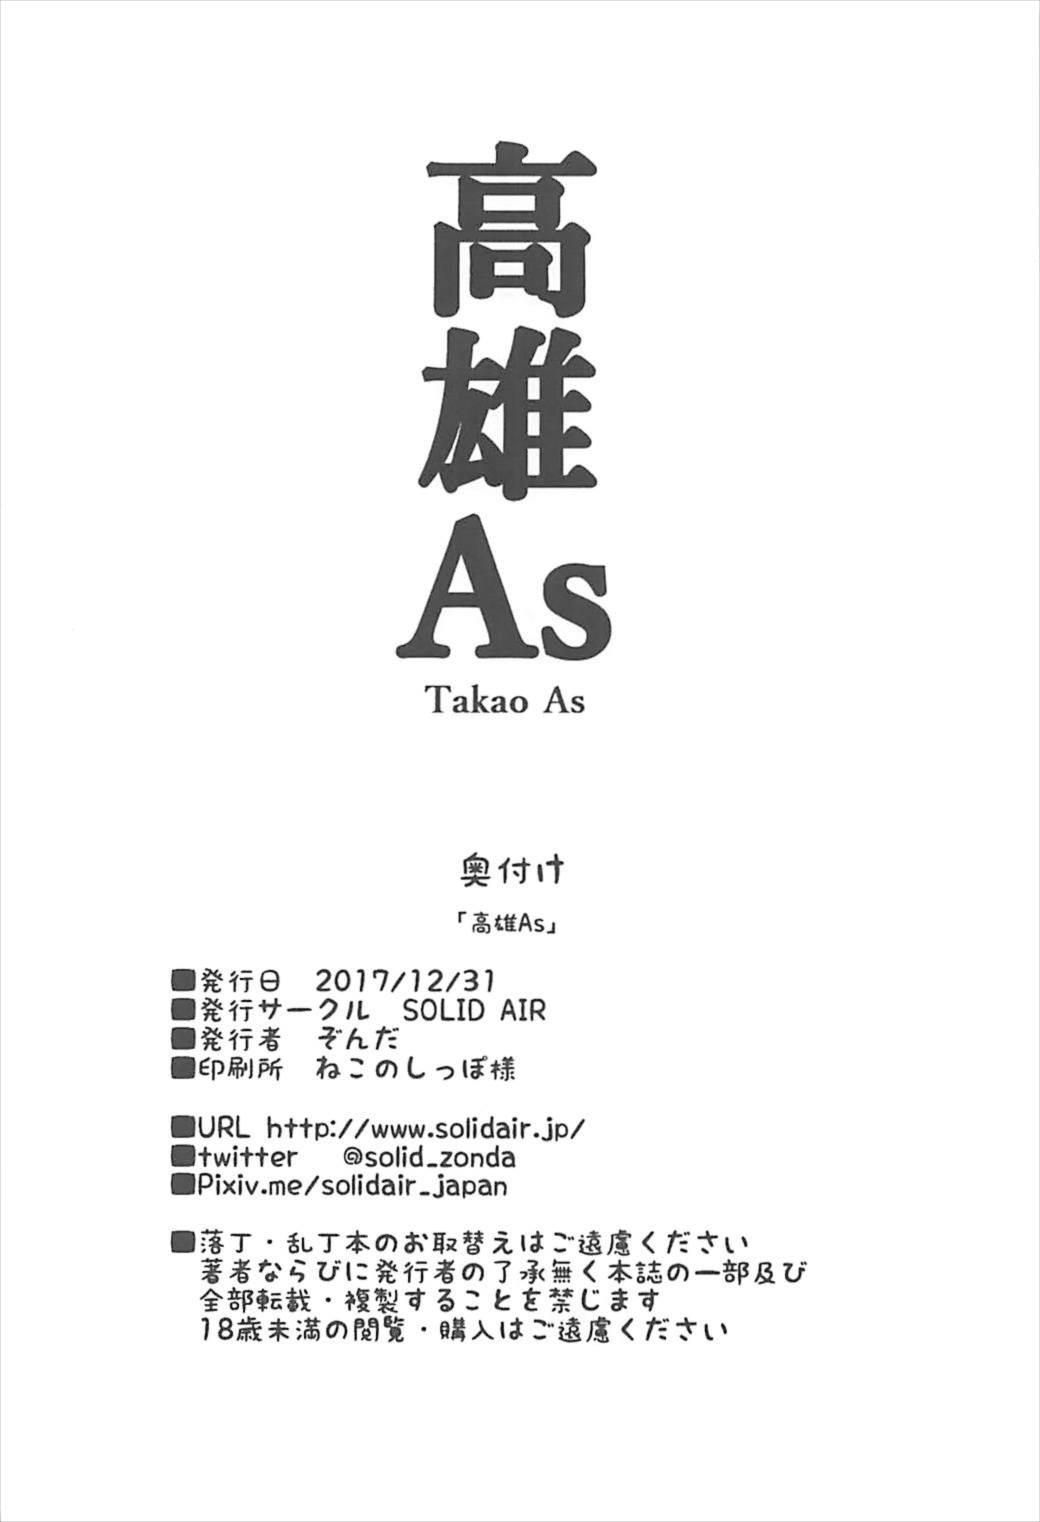 Takao AS 19